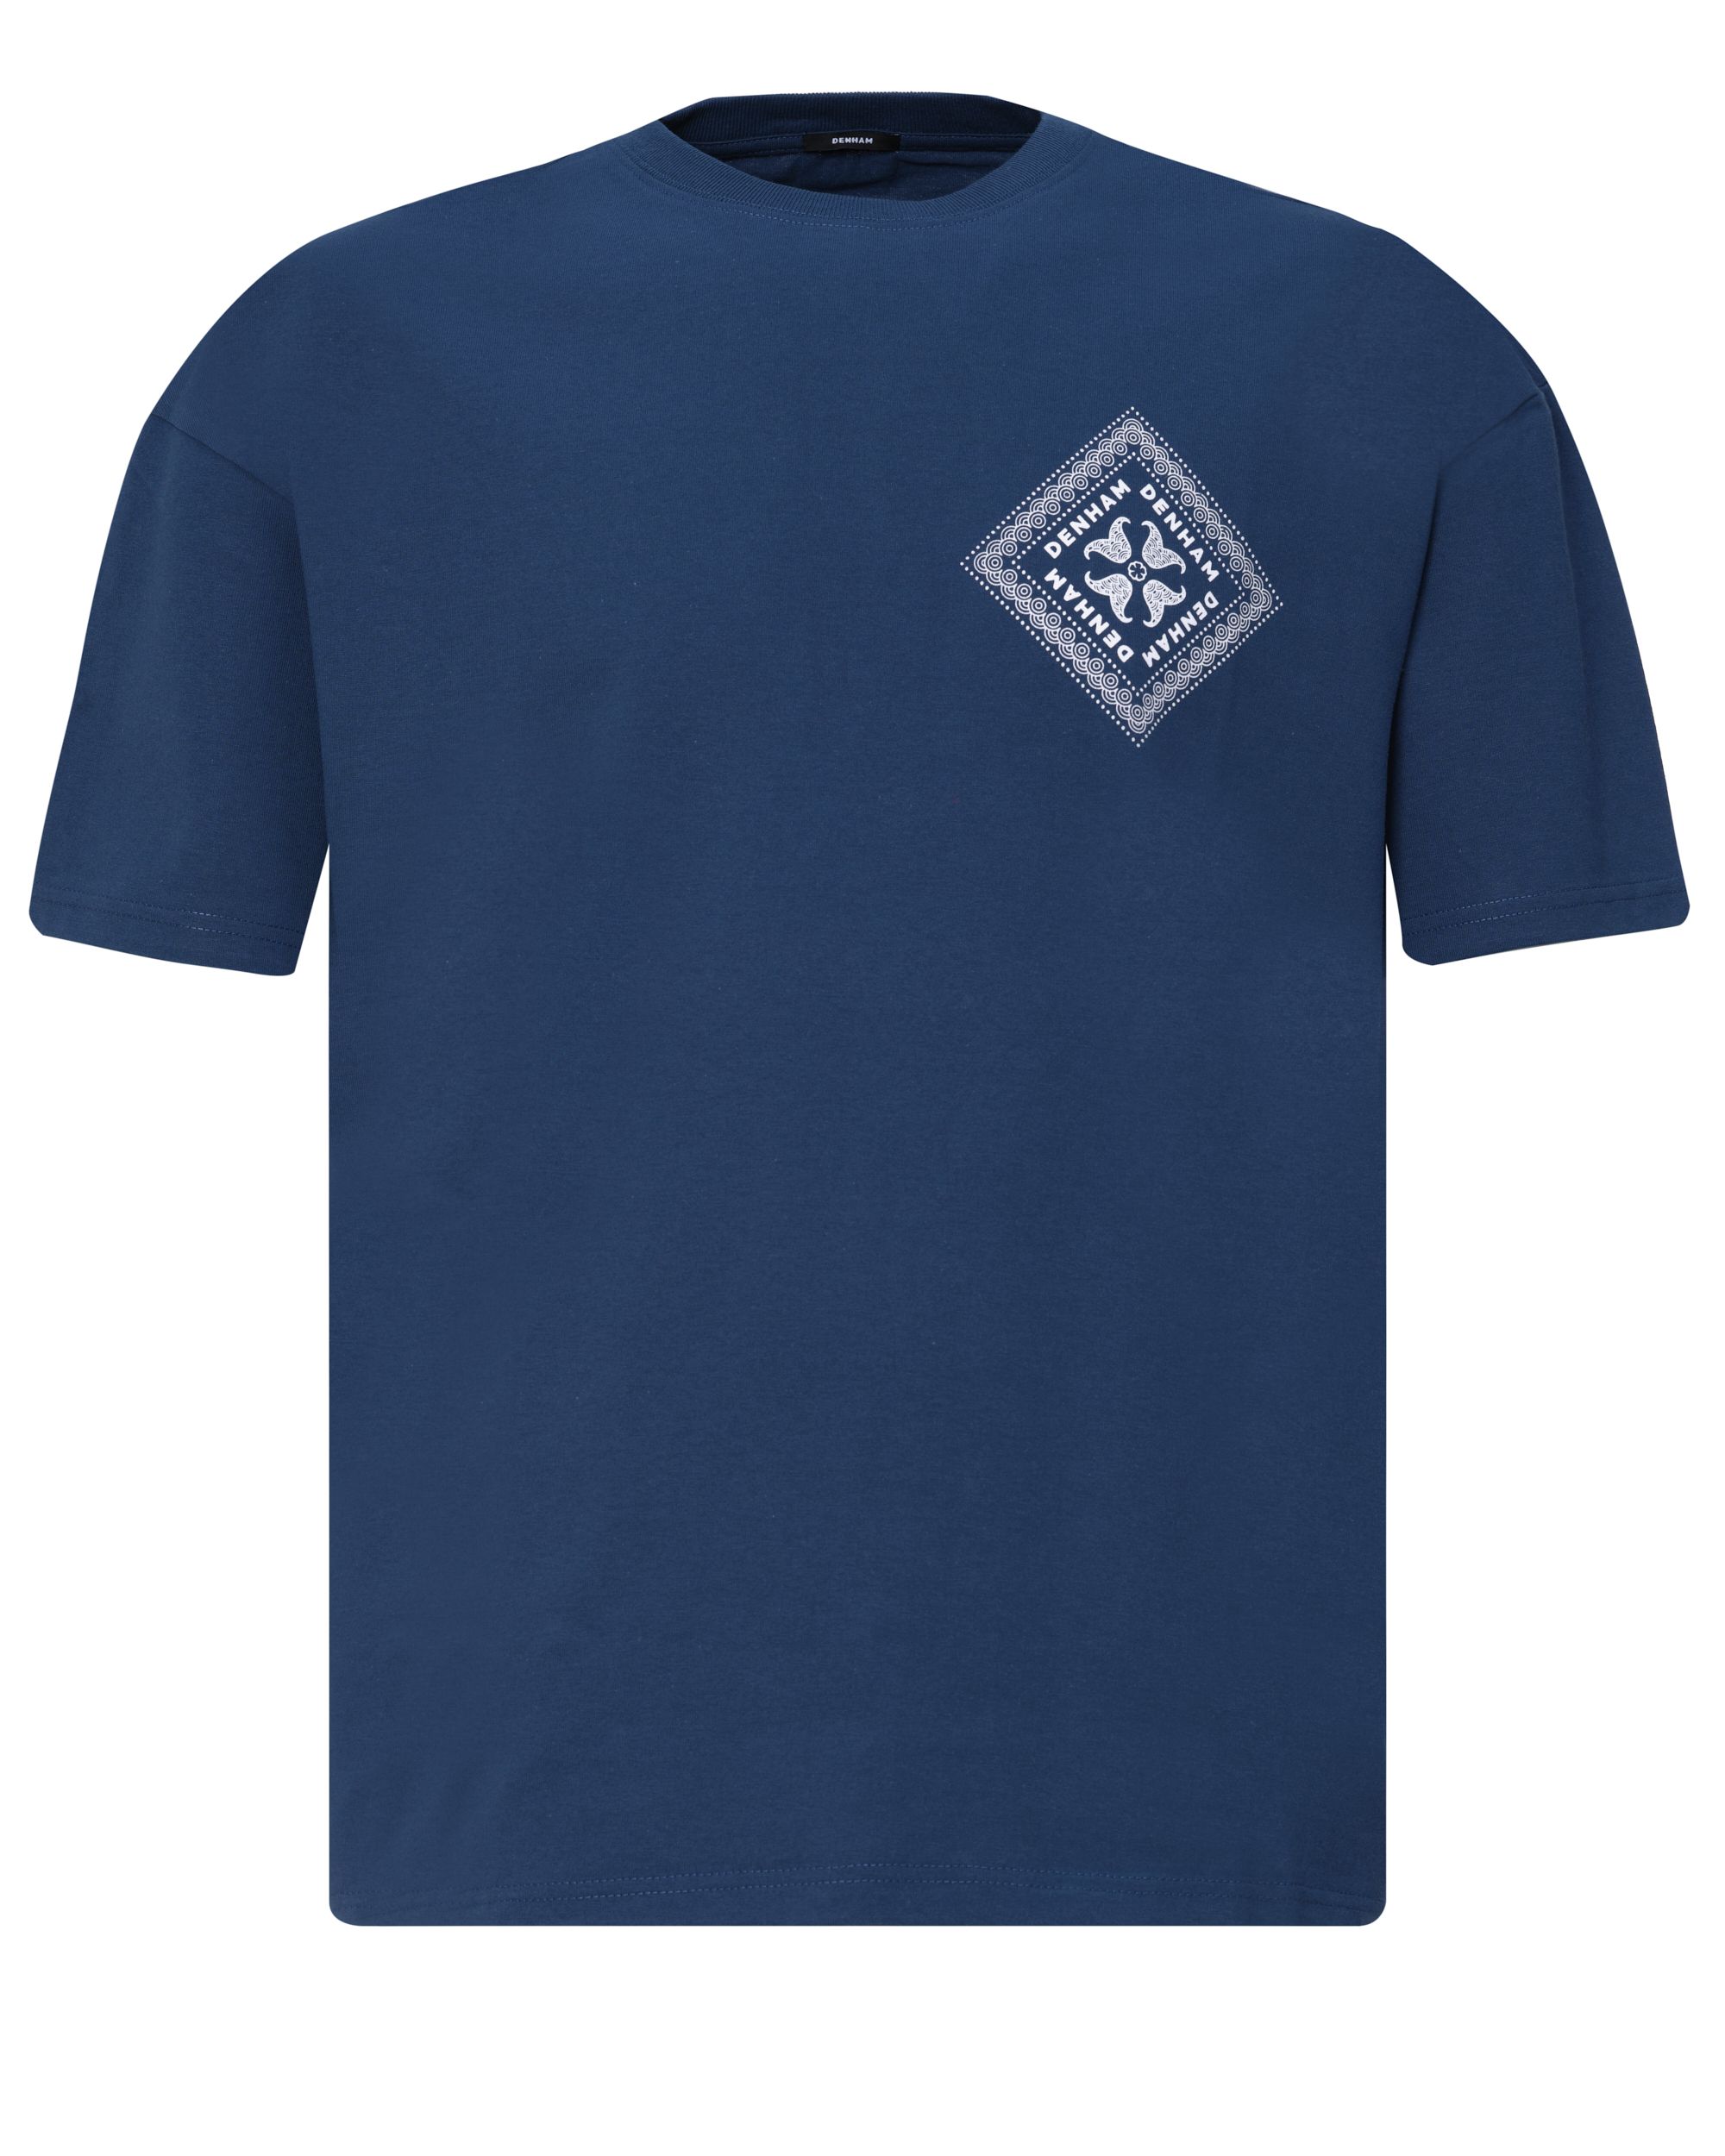 DENHAM Saint Box T-shirt KM Blauw 080110-001-L